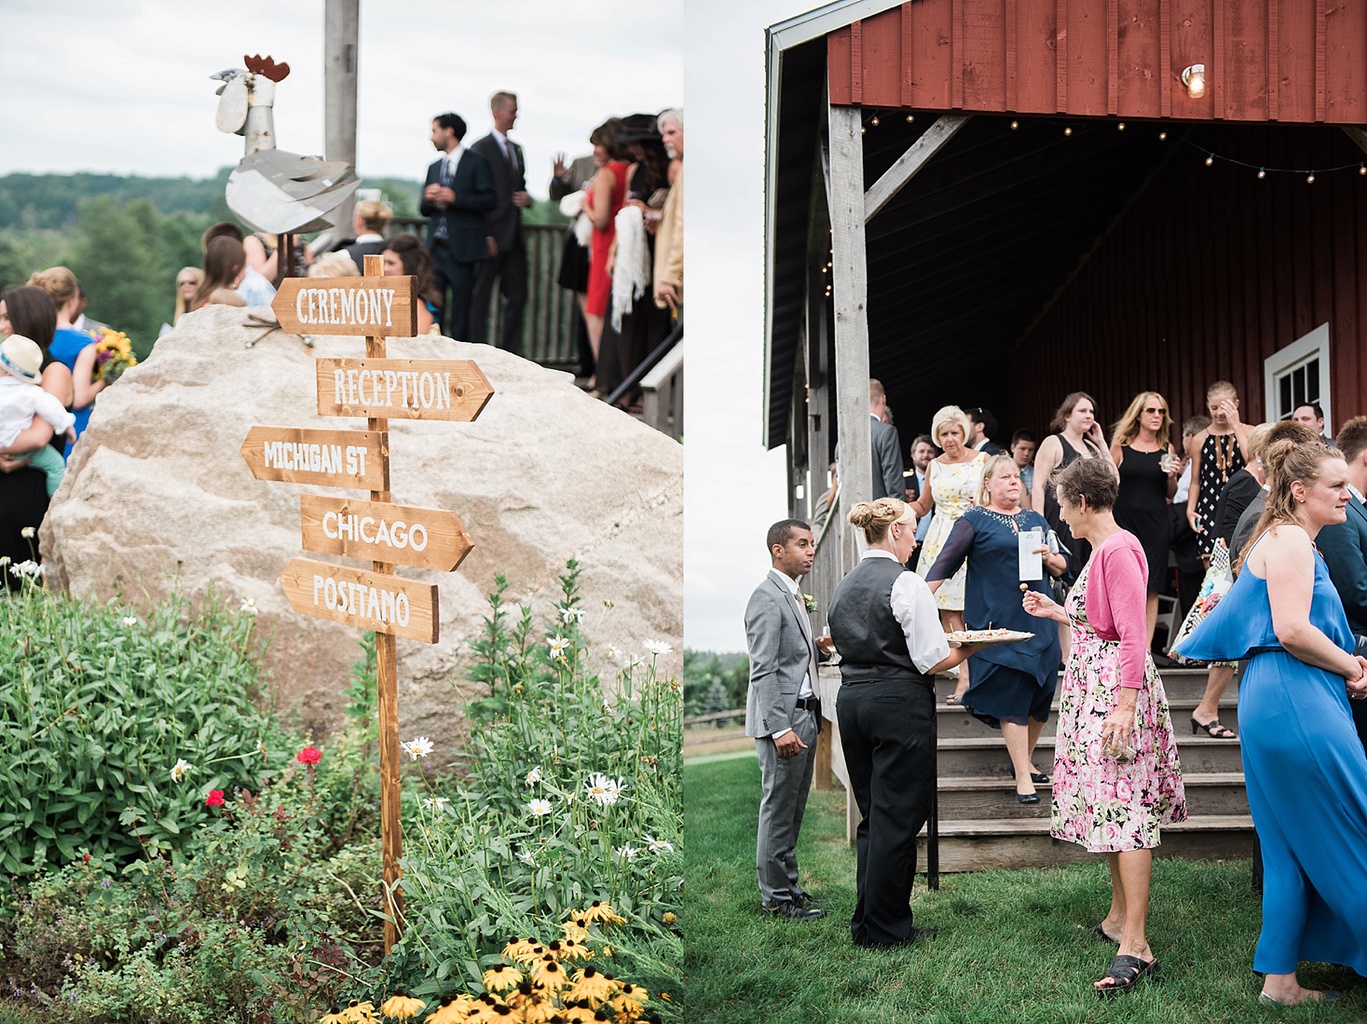 Traverse City Wedding Venues: Wedding photos from the Traverse City wedding barn